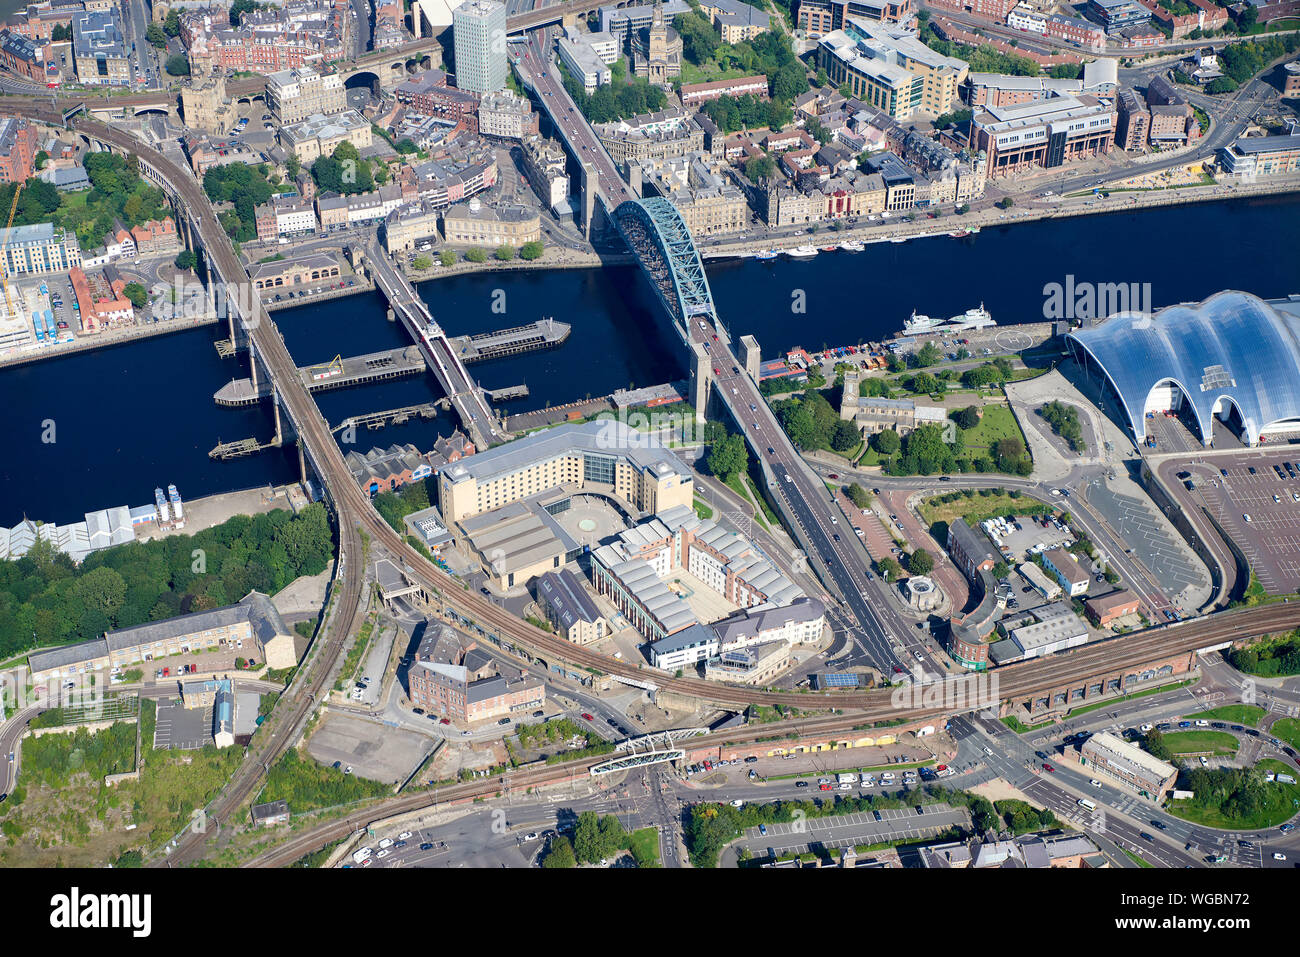 Una vista aérea de Newcastle upon Tyne, centro de la ciudad, noreste de Inglaterra, Reino Unido mostrando el Sage en Gateshead Foto de stock